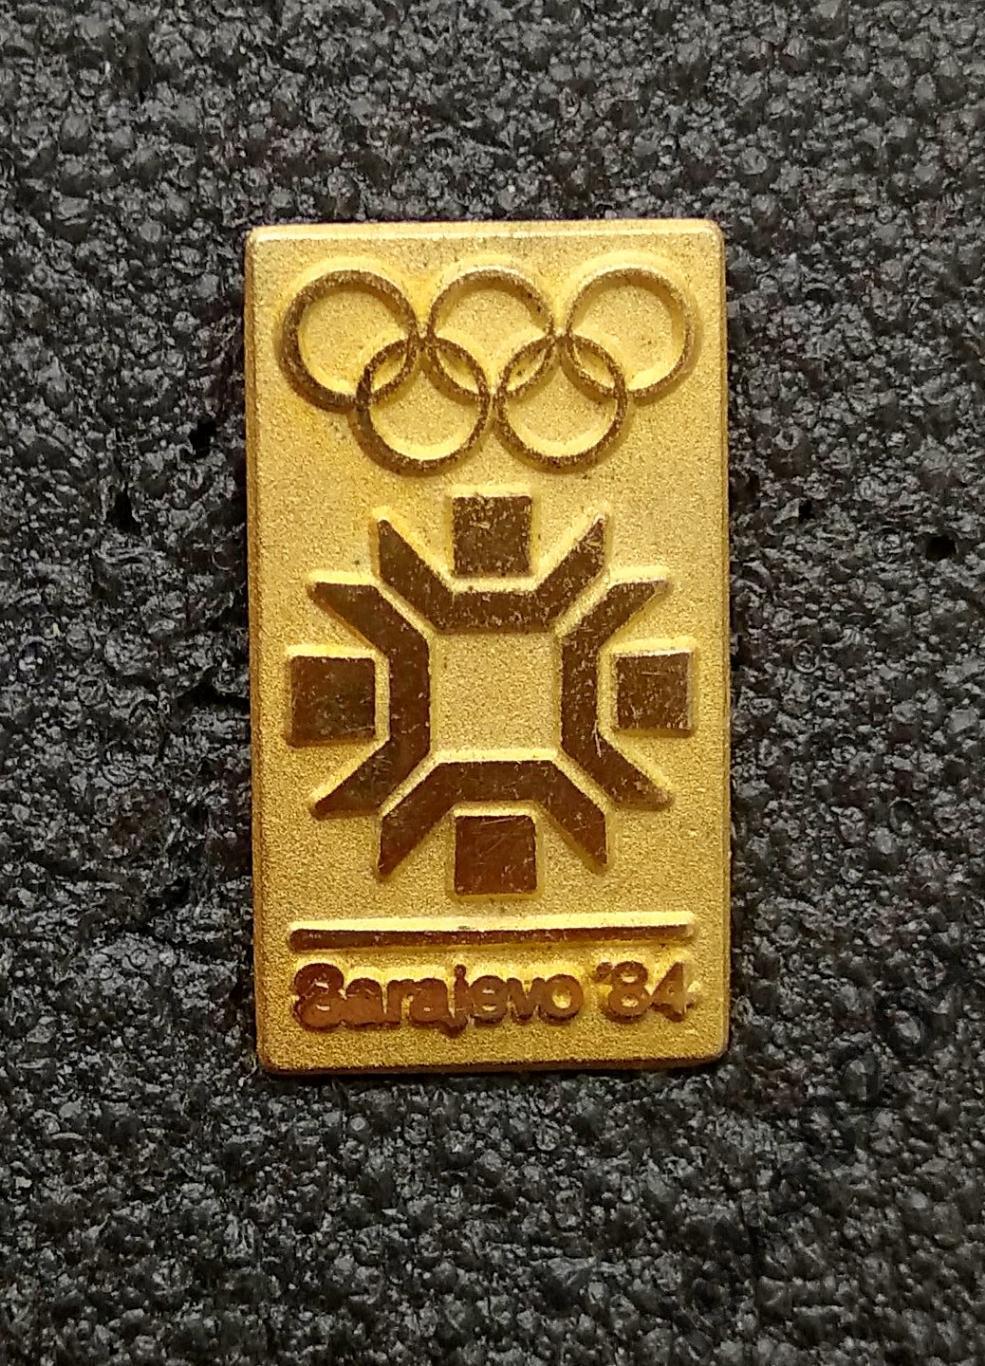 ЮГОСЛАВИЯ. Олимпийские игры 1984 года в Сараево.